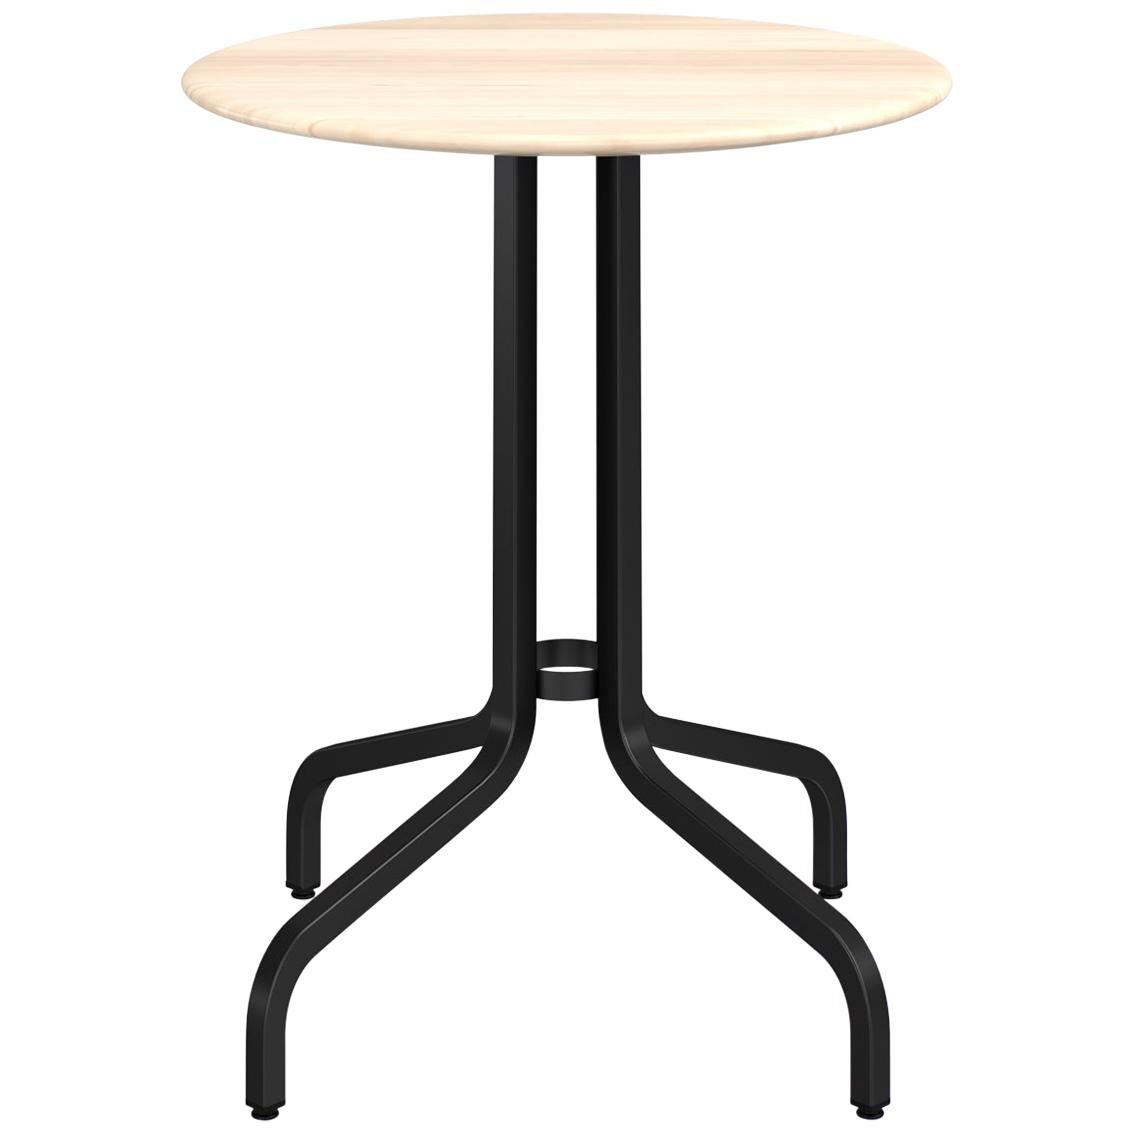 Table basse ronde de 2,54 cm Emeco avec pieds noirs et plateau en bois par Jasper Morrison